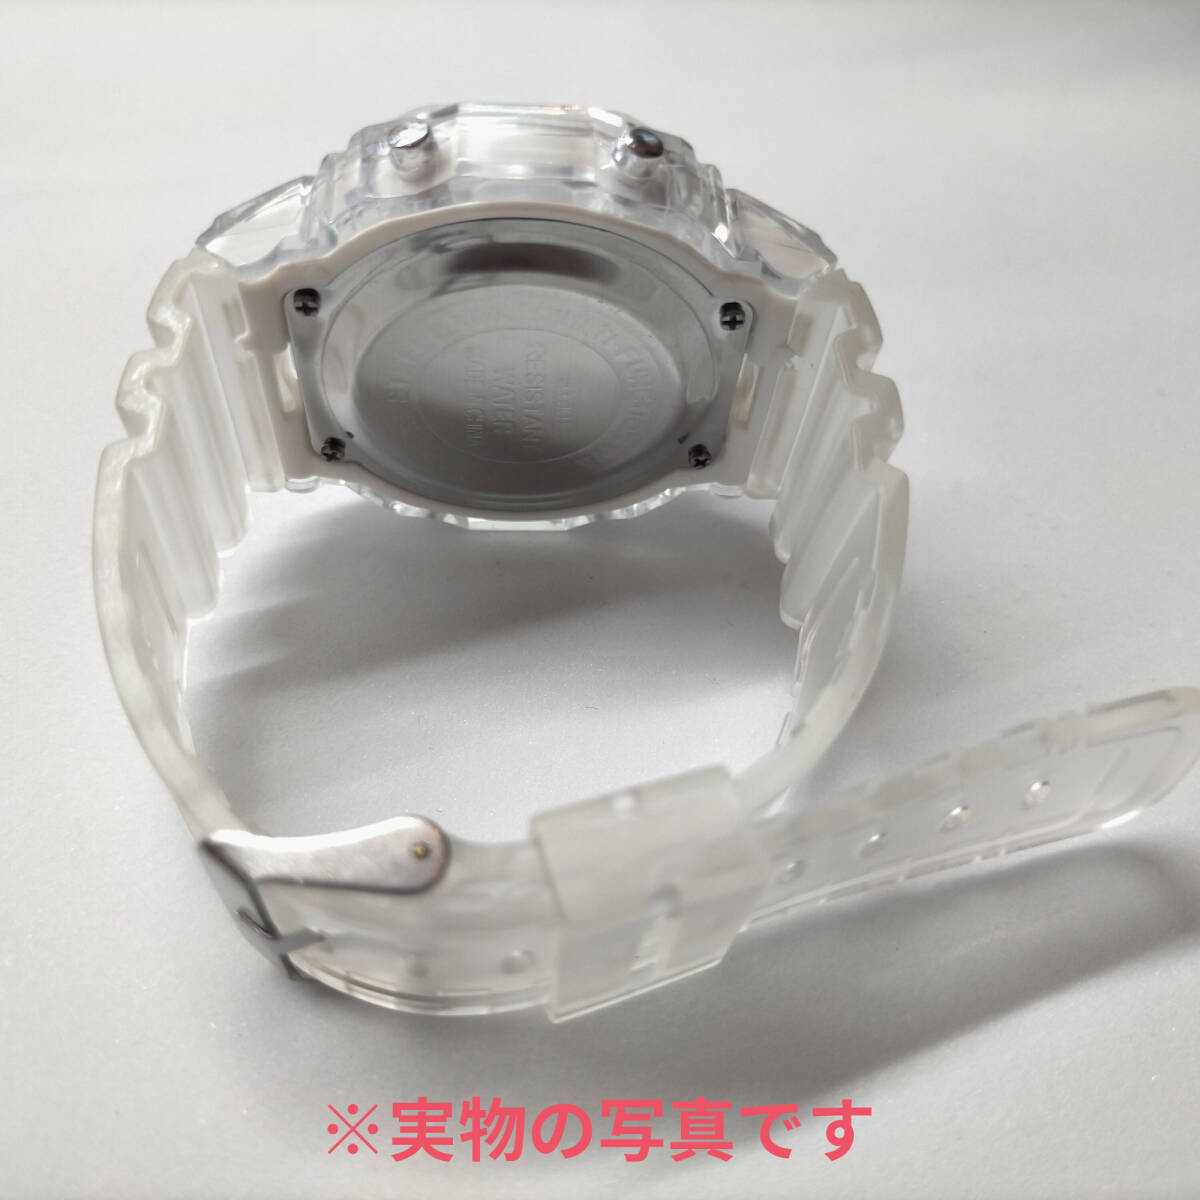 スケルトン防水軽量シンプルデザイン スポーツウォッチ デジタル腕時計レディース くすみカラー ホワイト白 (G-shockではありません)の画像3